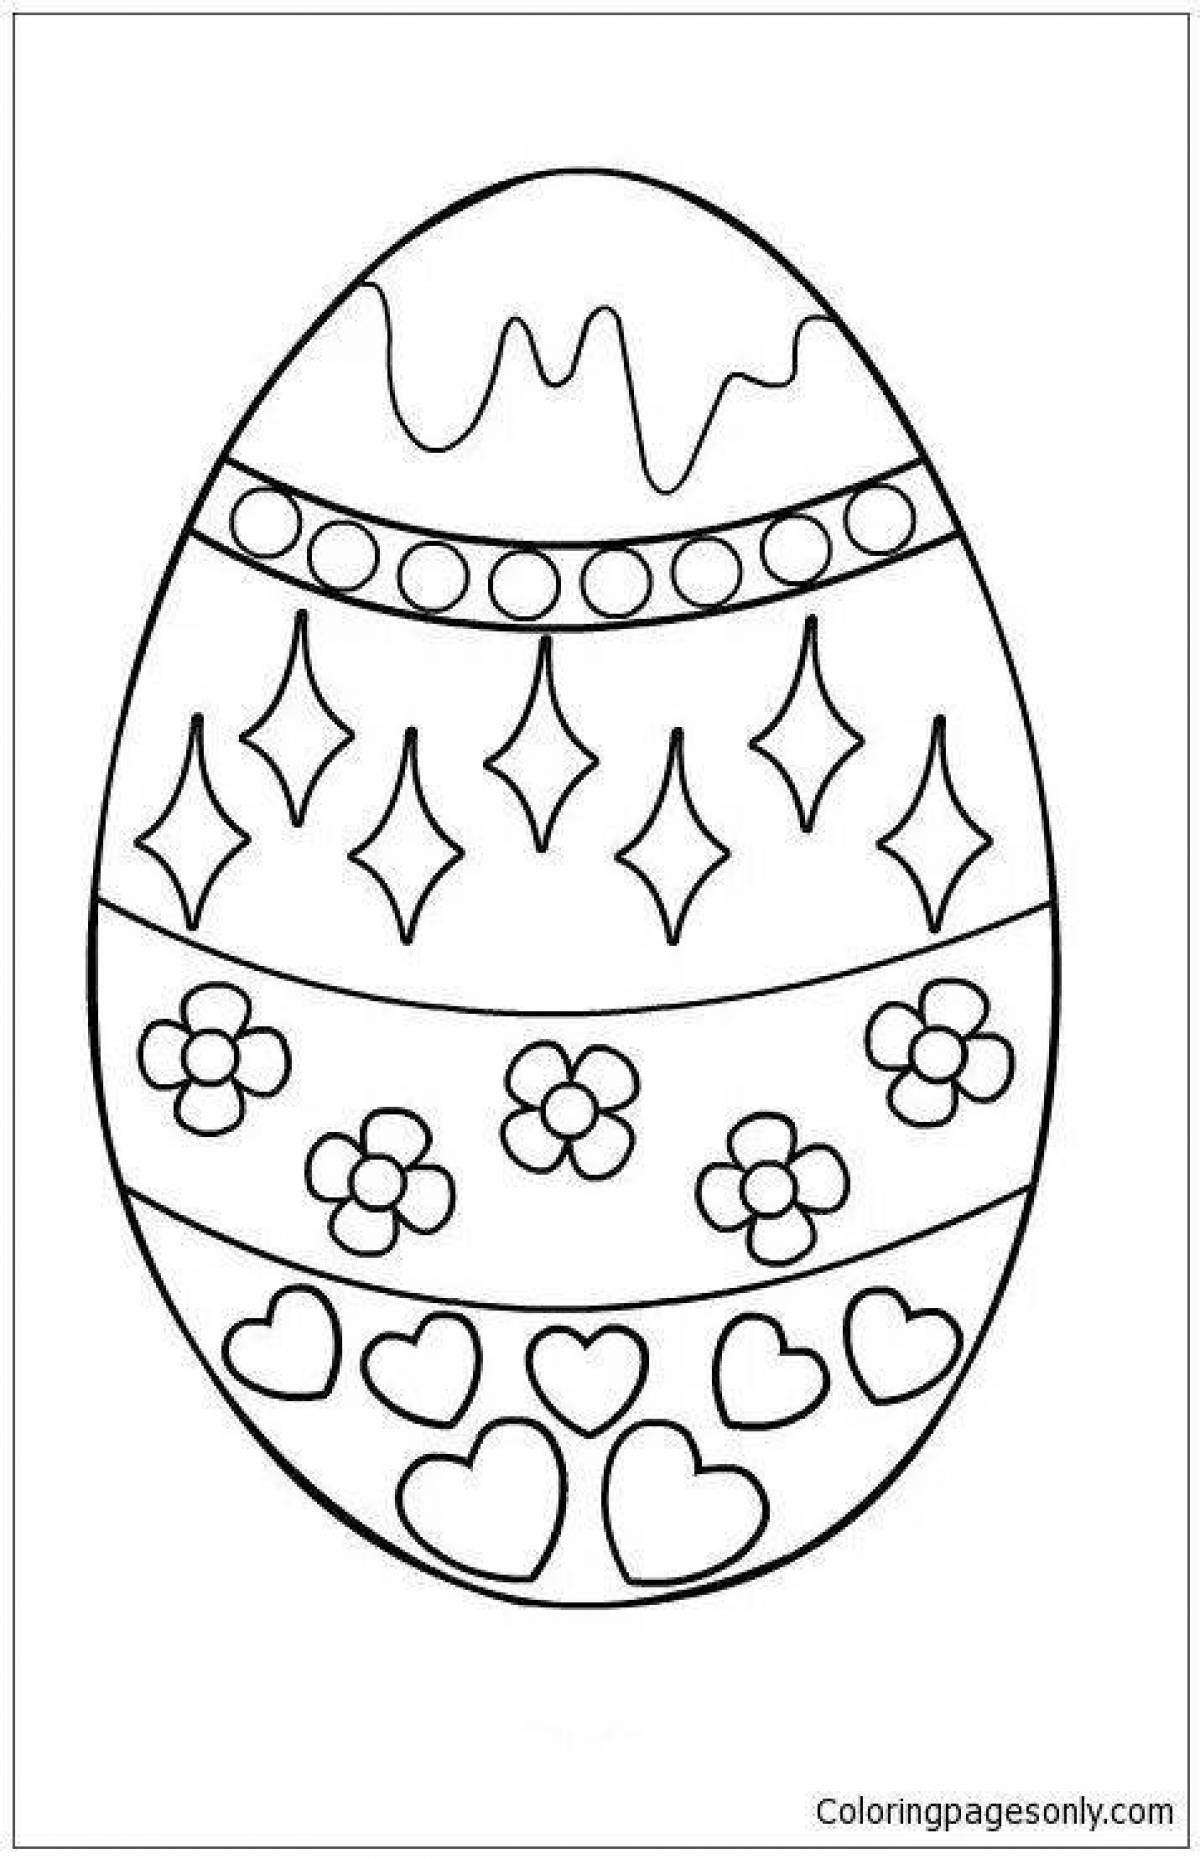 Fancy Easter egg coloring